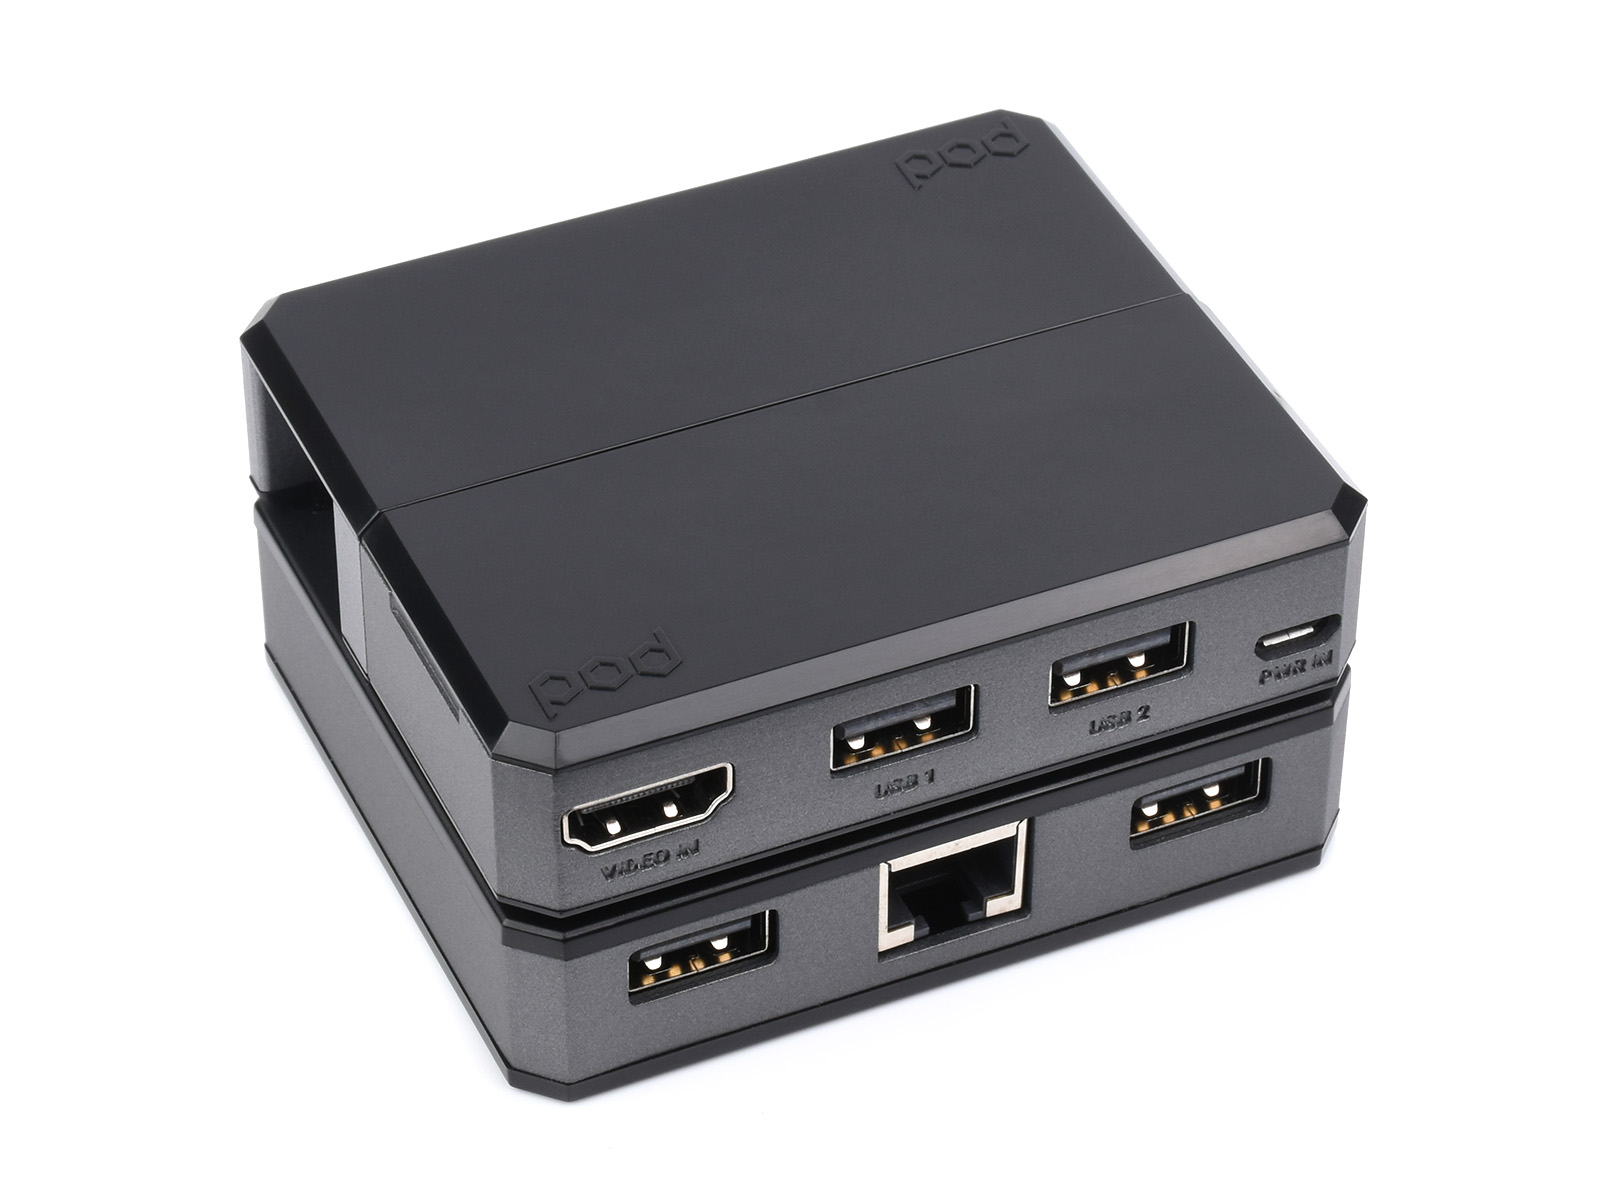 树莓派Zero POD套件A 含HDMI/USB扩展模块+Zero POD外壳+LAN模块 适用于树莓派Zero/Zero 2 W系列主板